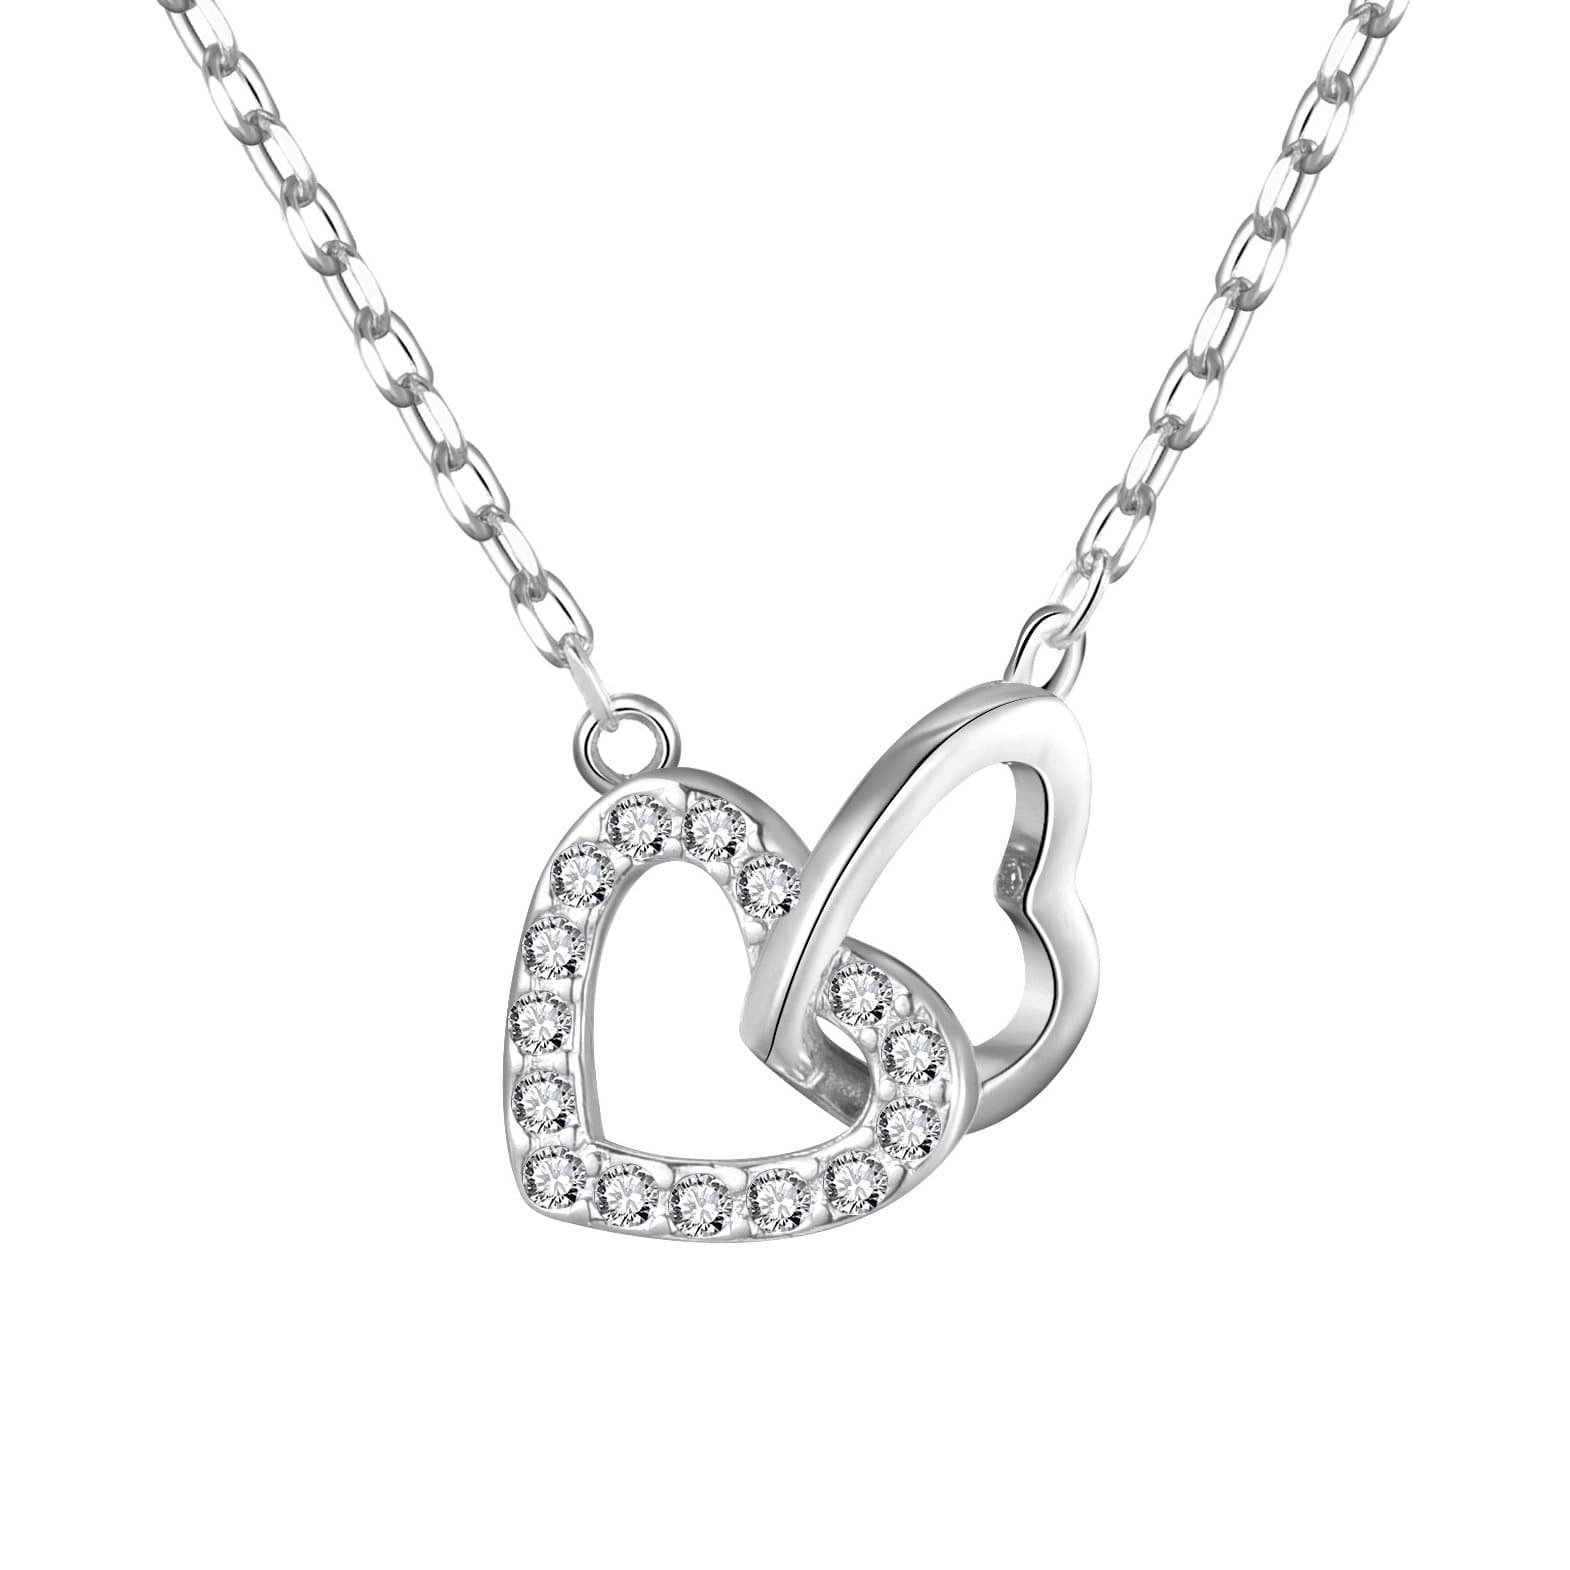 Heart Link Necklace from Philip Jones Jewellery